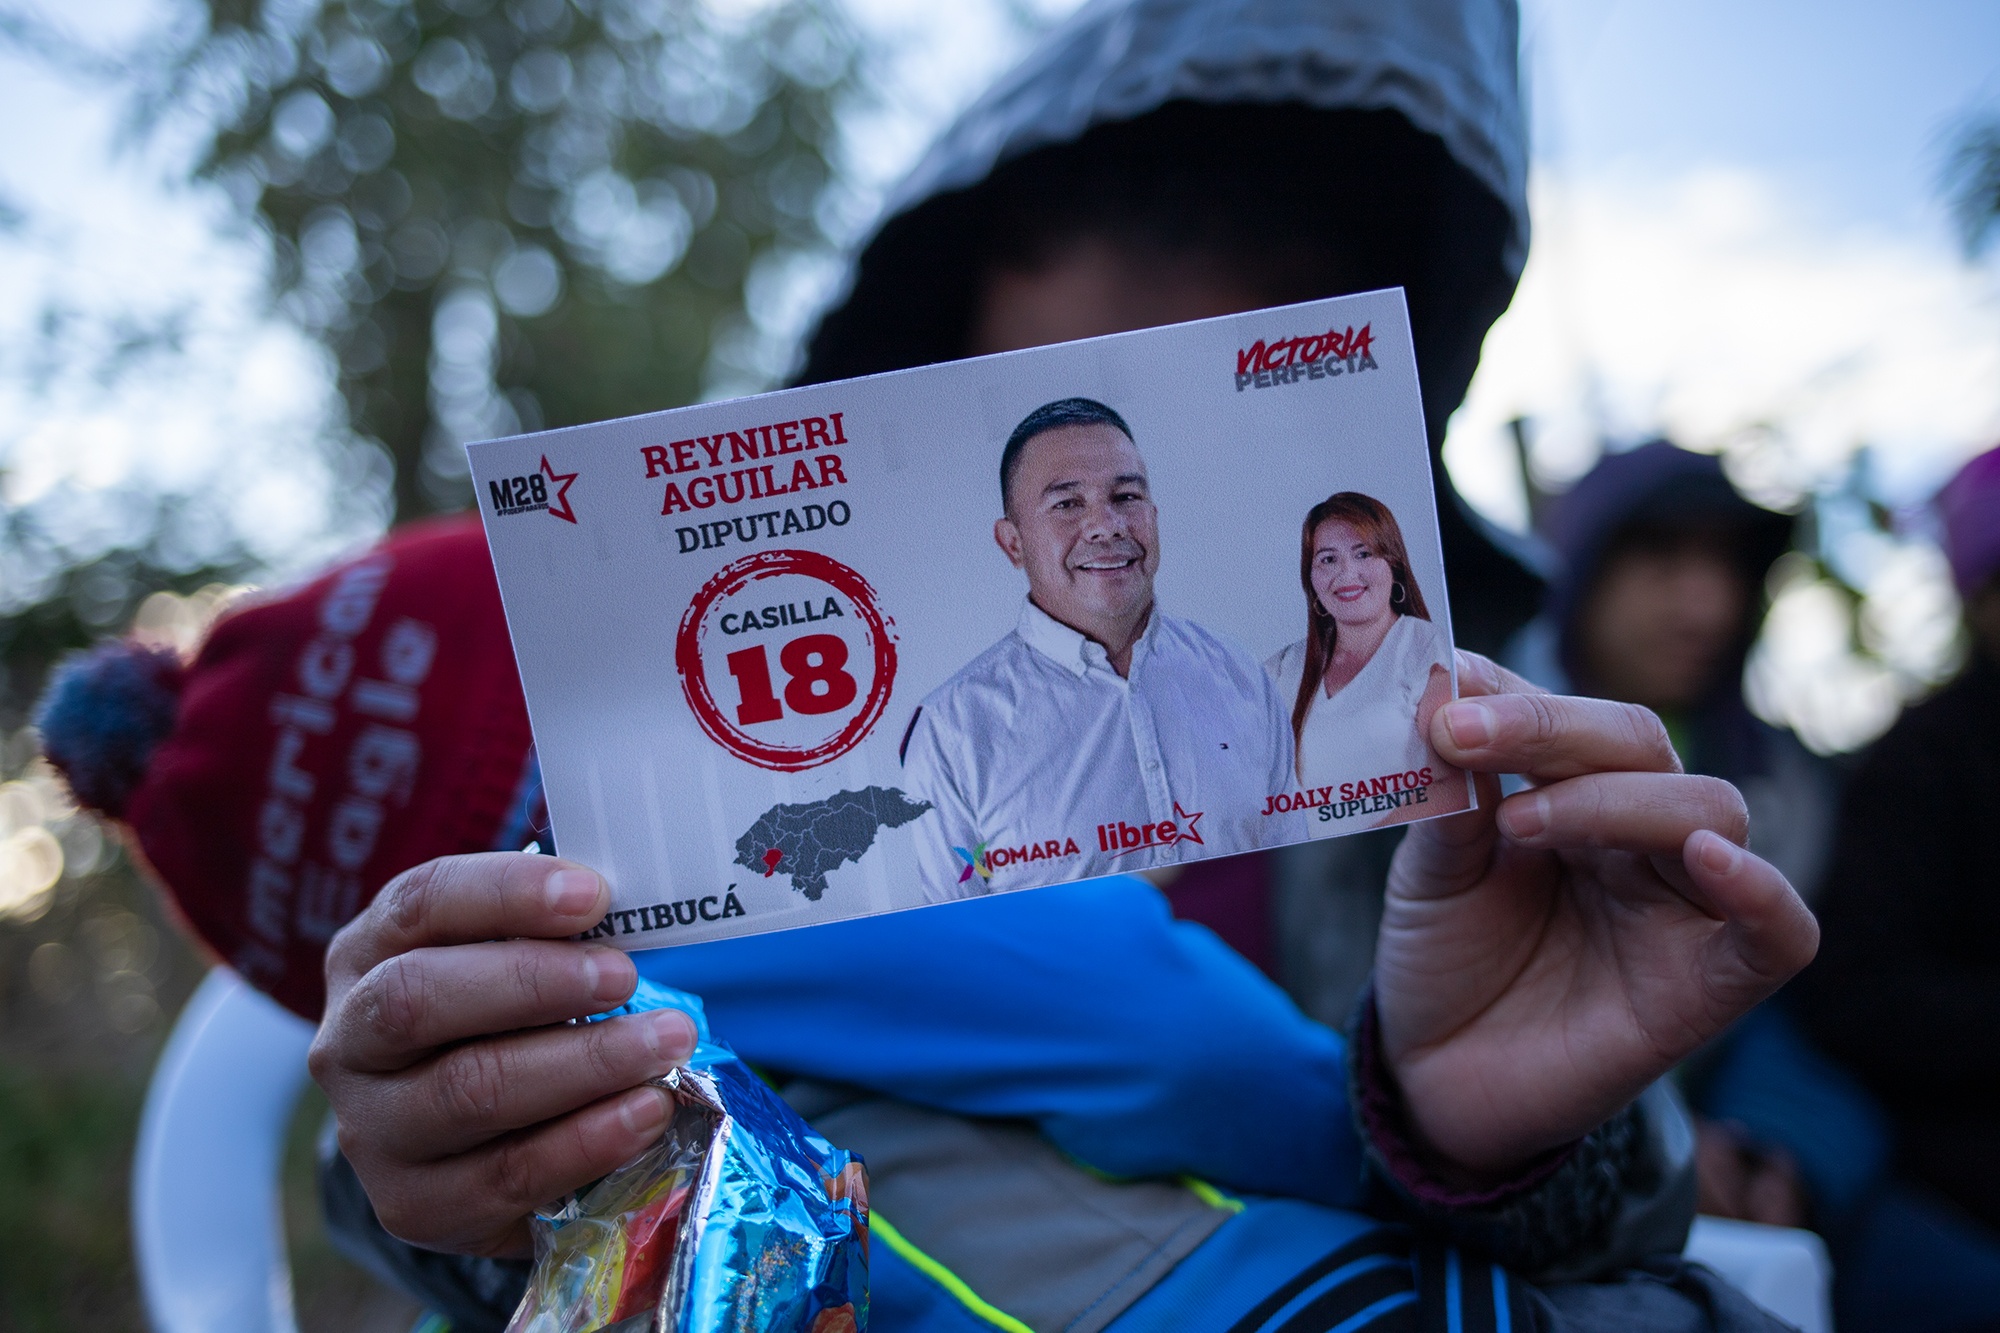 Una joven sostiene un sticker del precandidato a diputado, Reynieri Aguilar del movimiento M28 del Partido Libre. Yamaranguila, Intibucá, 19 de febrero de 2021. Foto: Martín Cálix.